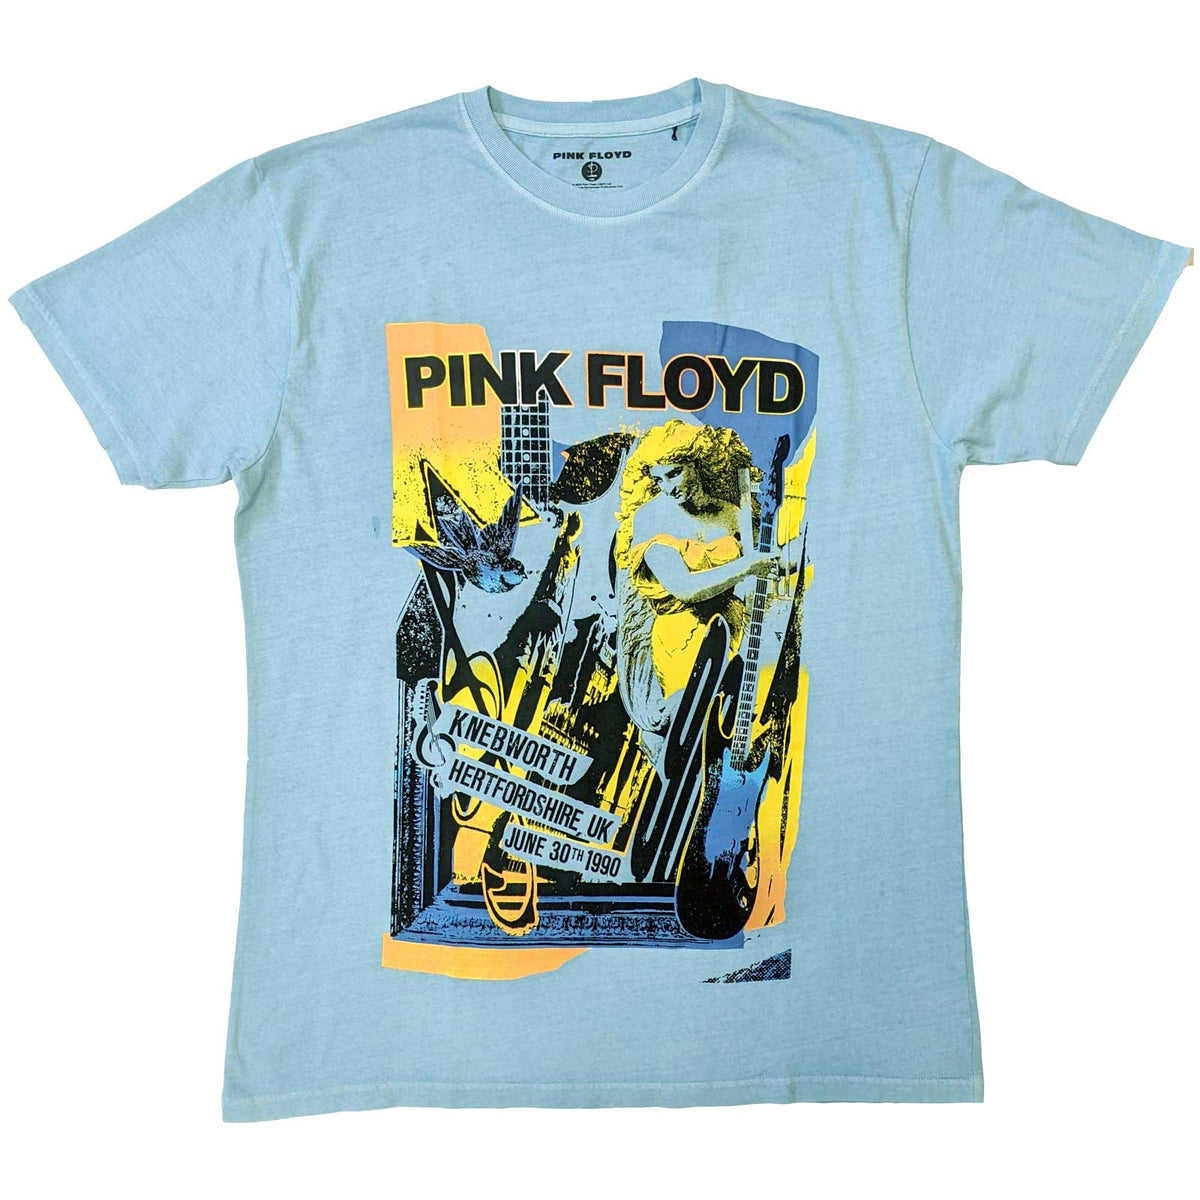 Pink Floyd Unisex T-Shirt - Knebworth Live (Wash Collection) - Official Licensed Design